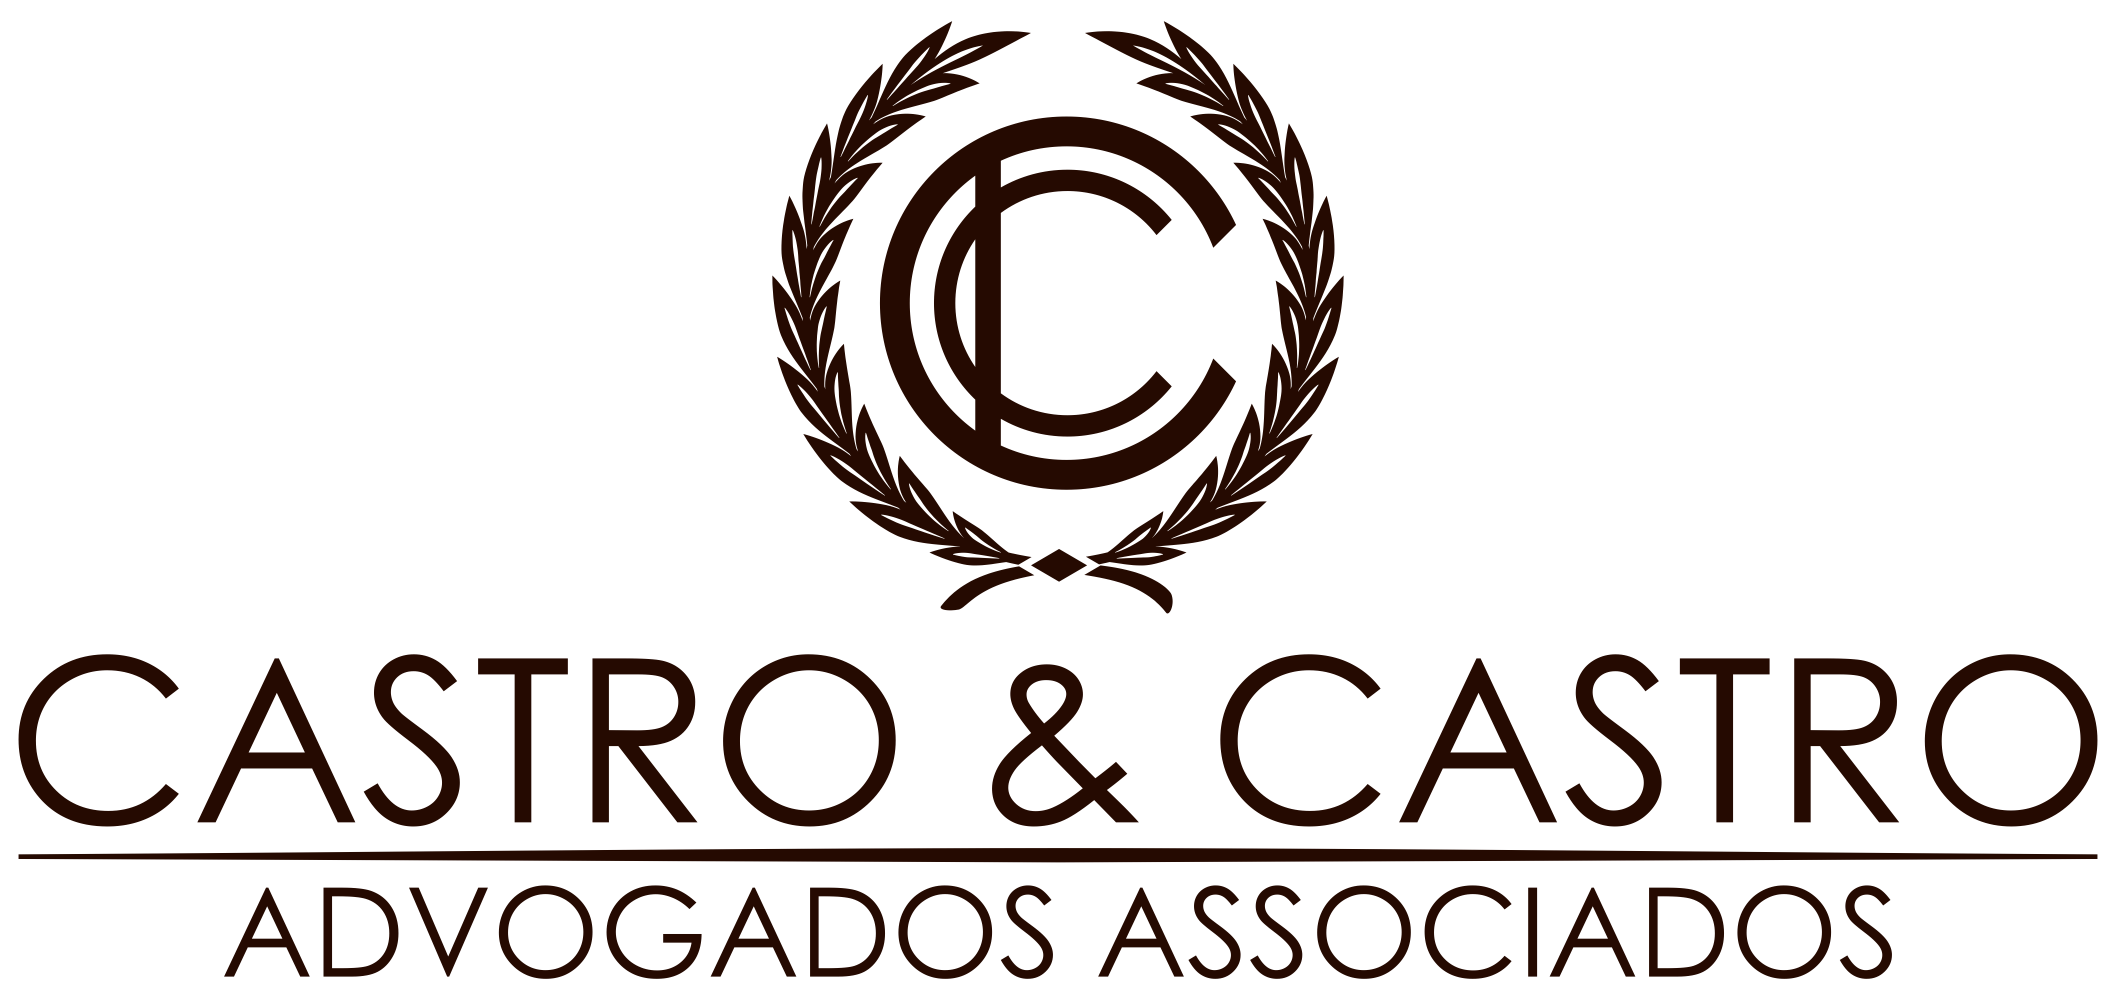 Castro & Castro Advogados Associados